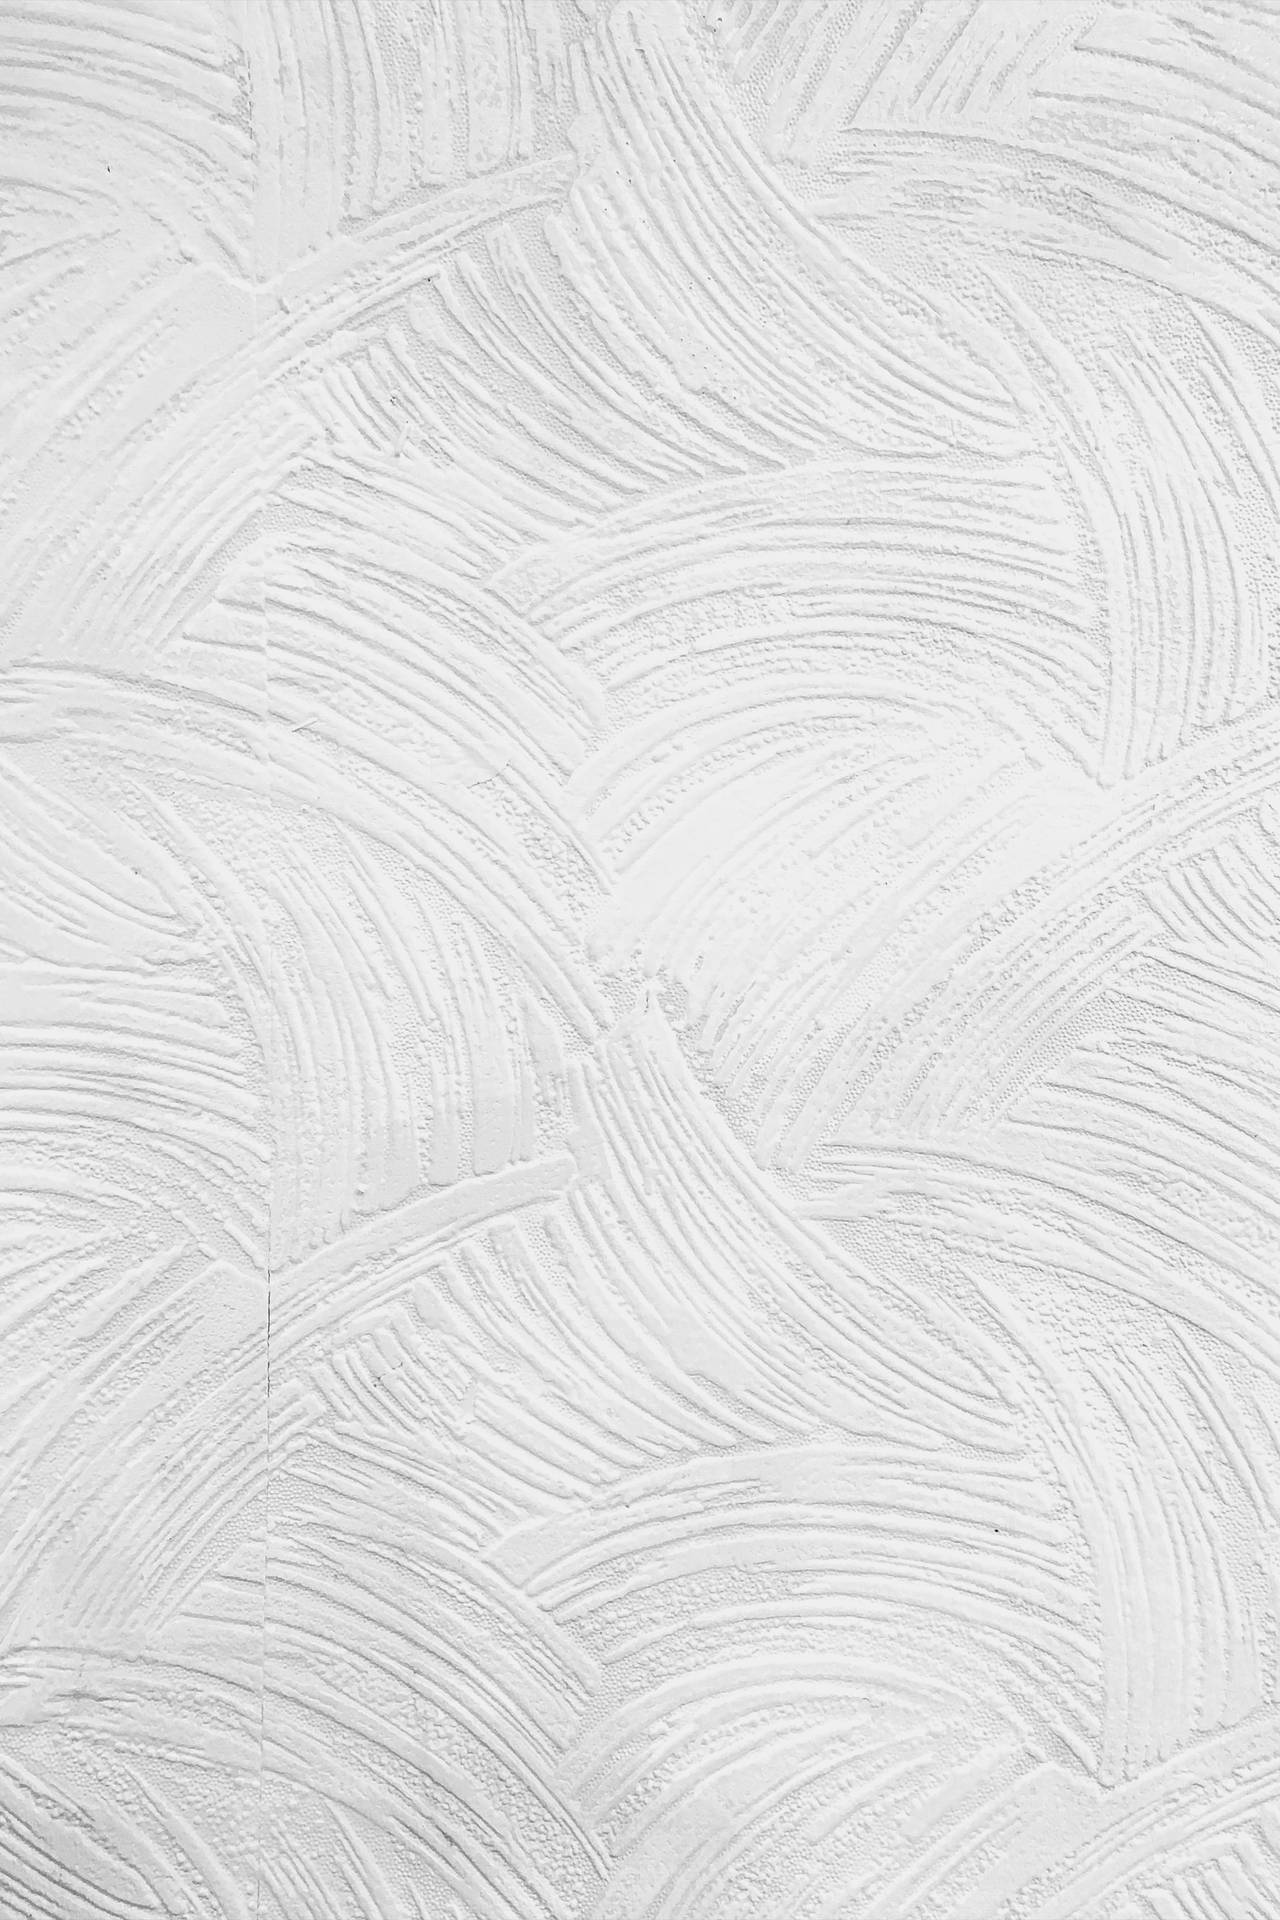 Texture Paint Brush White Pattern